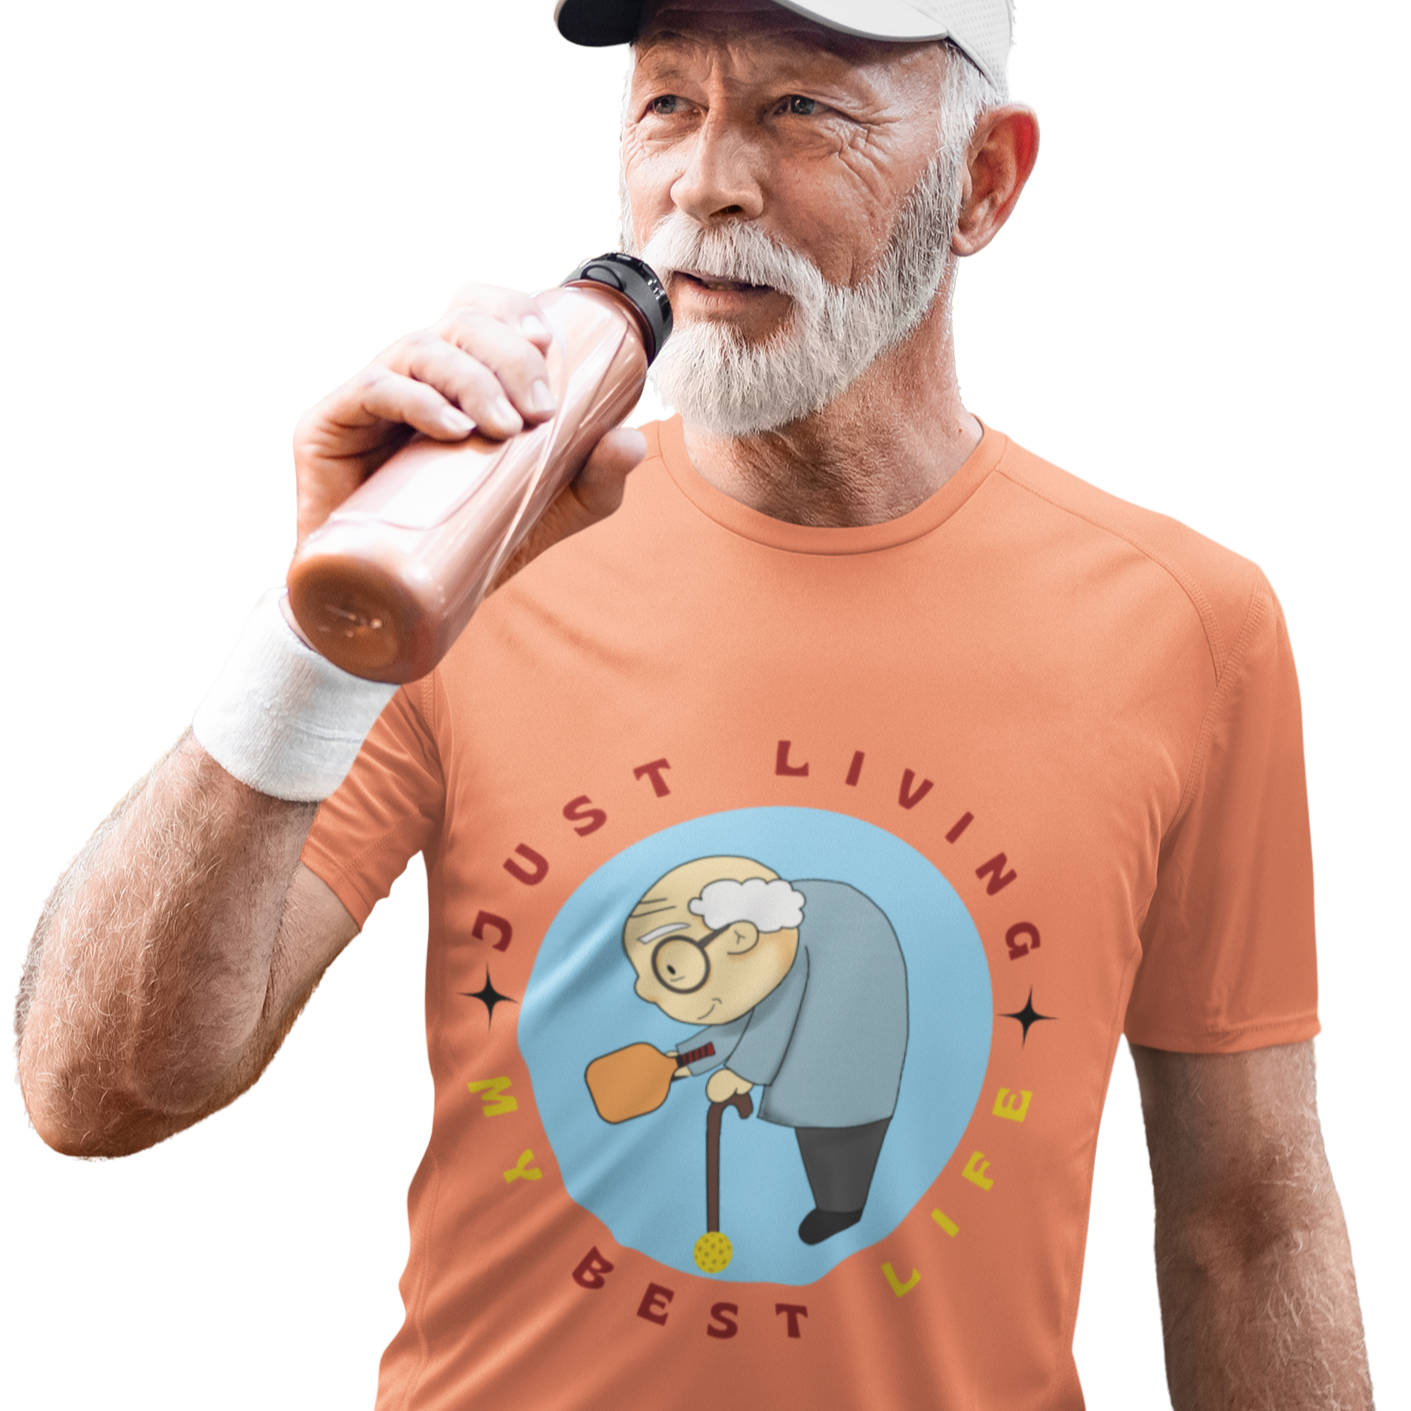 'Just Living My Best Life' Senior Pickleball T-Shirt